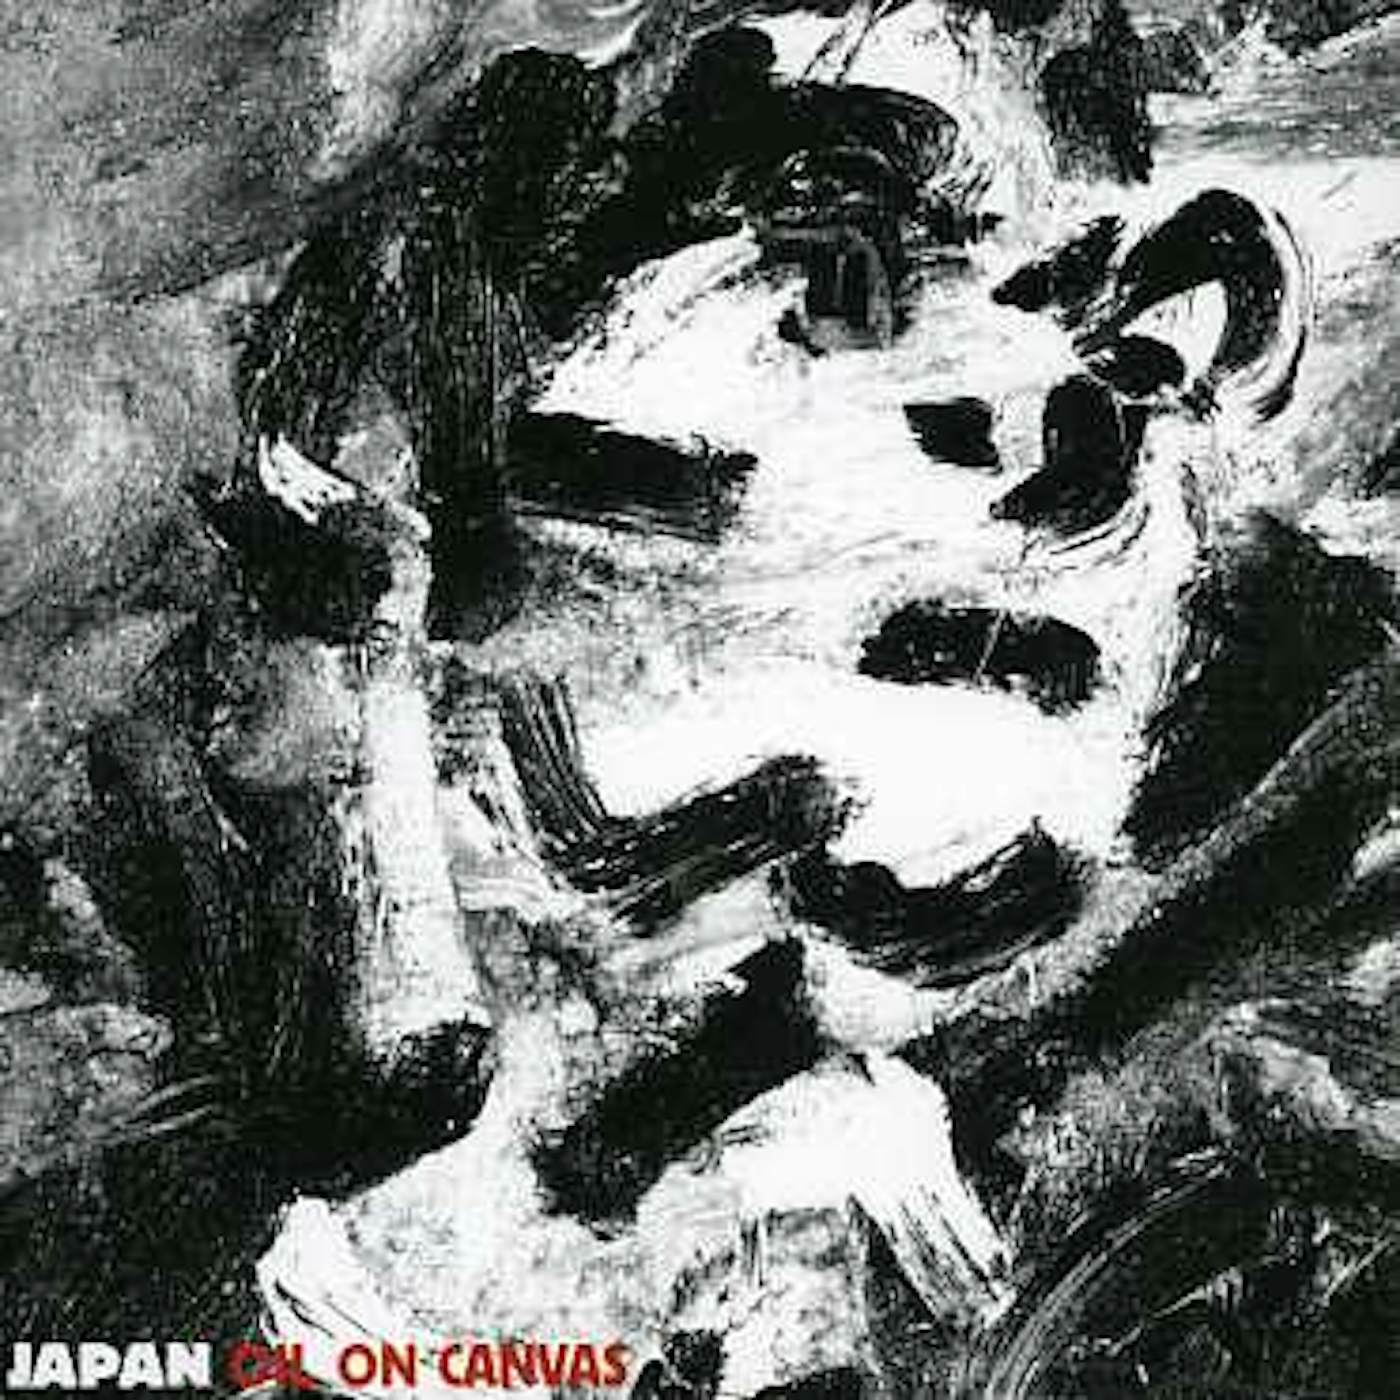 Japan OIL ON CANVAS CD